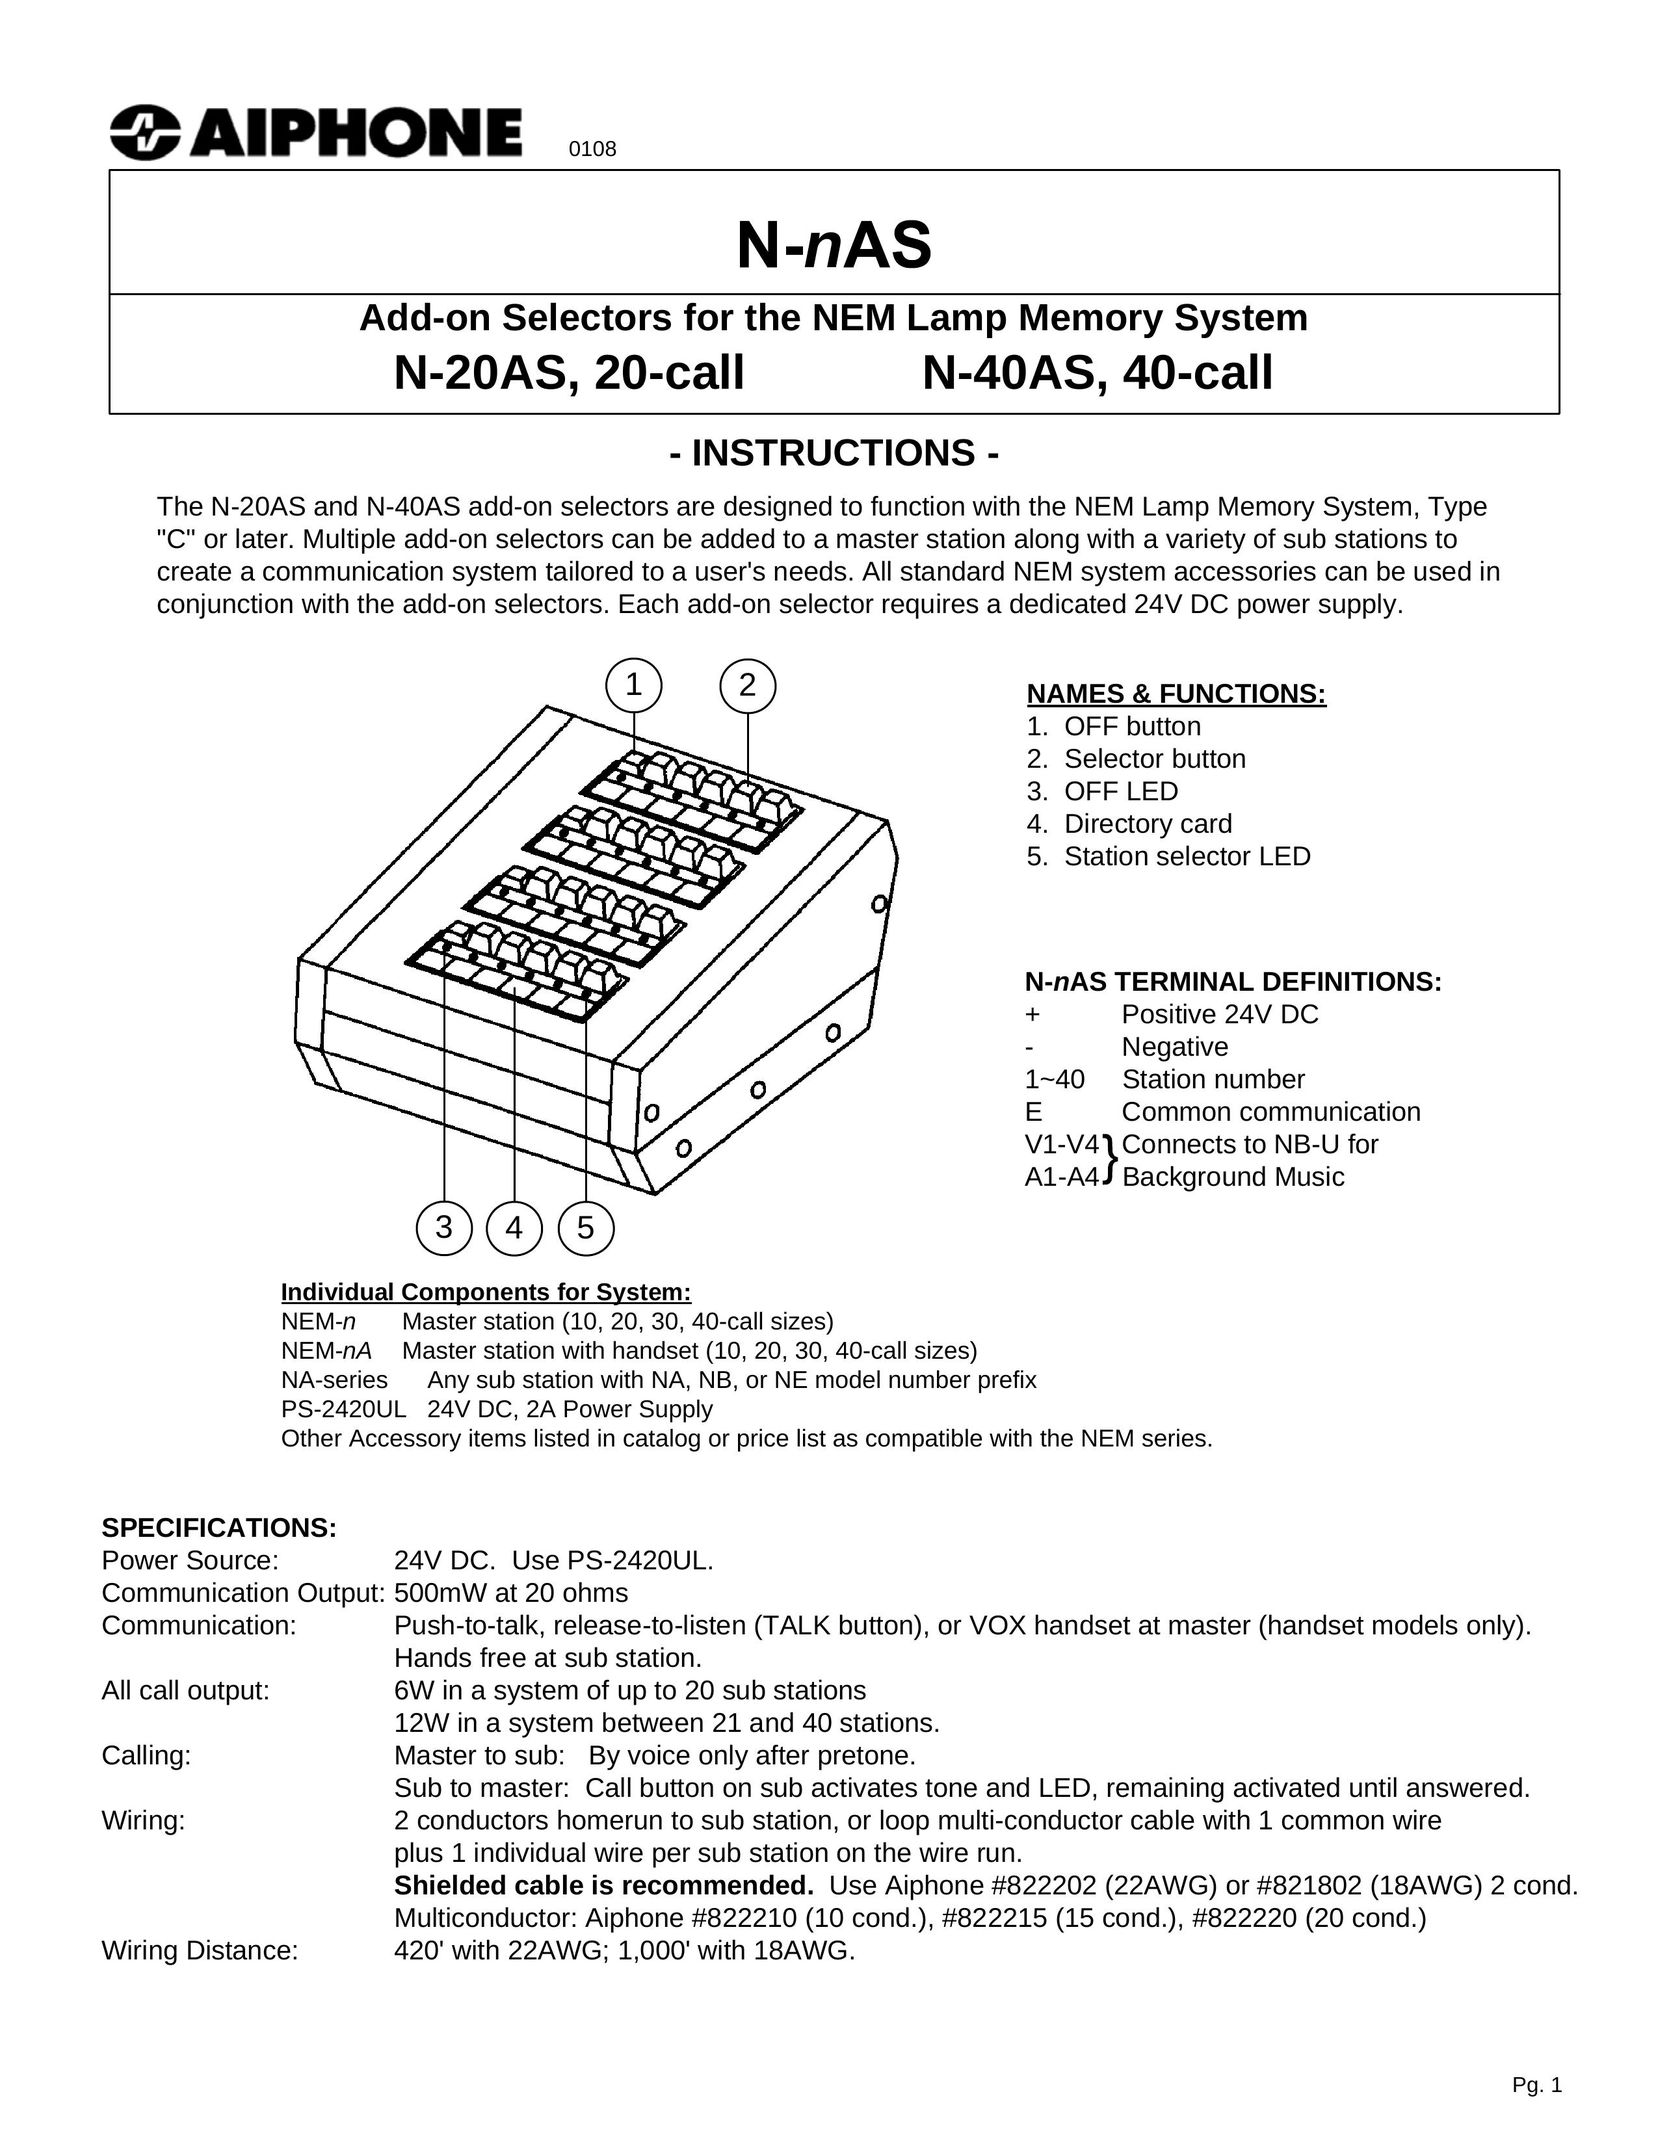 Aiphone N-40AS Indoor Furnishings User Manual